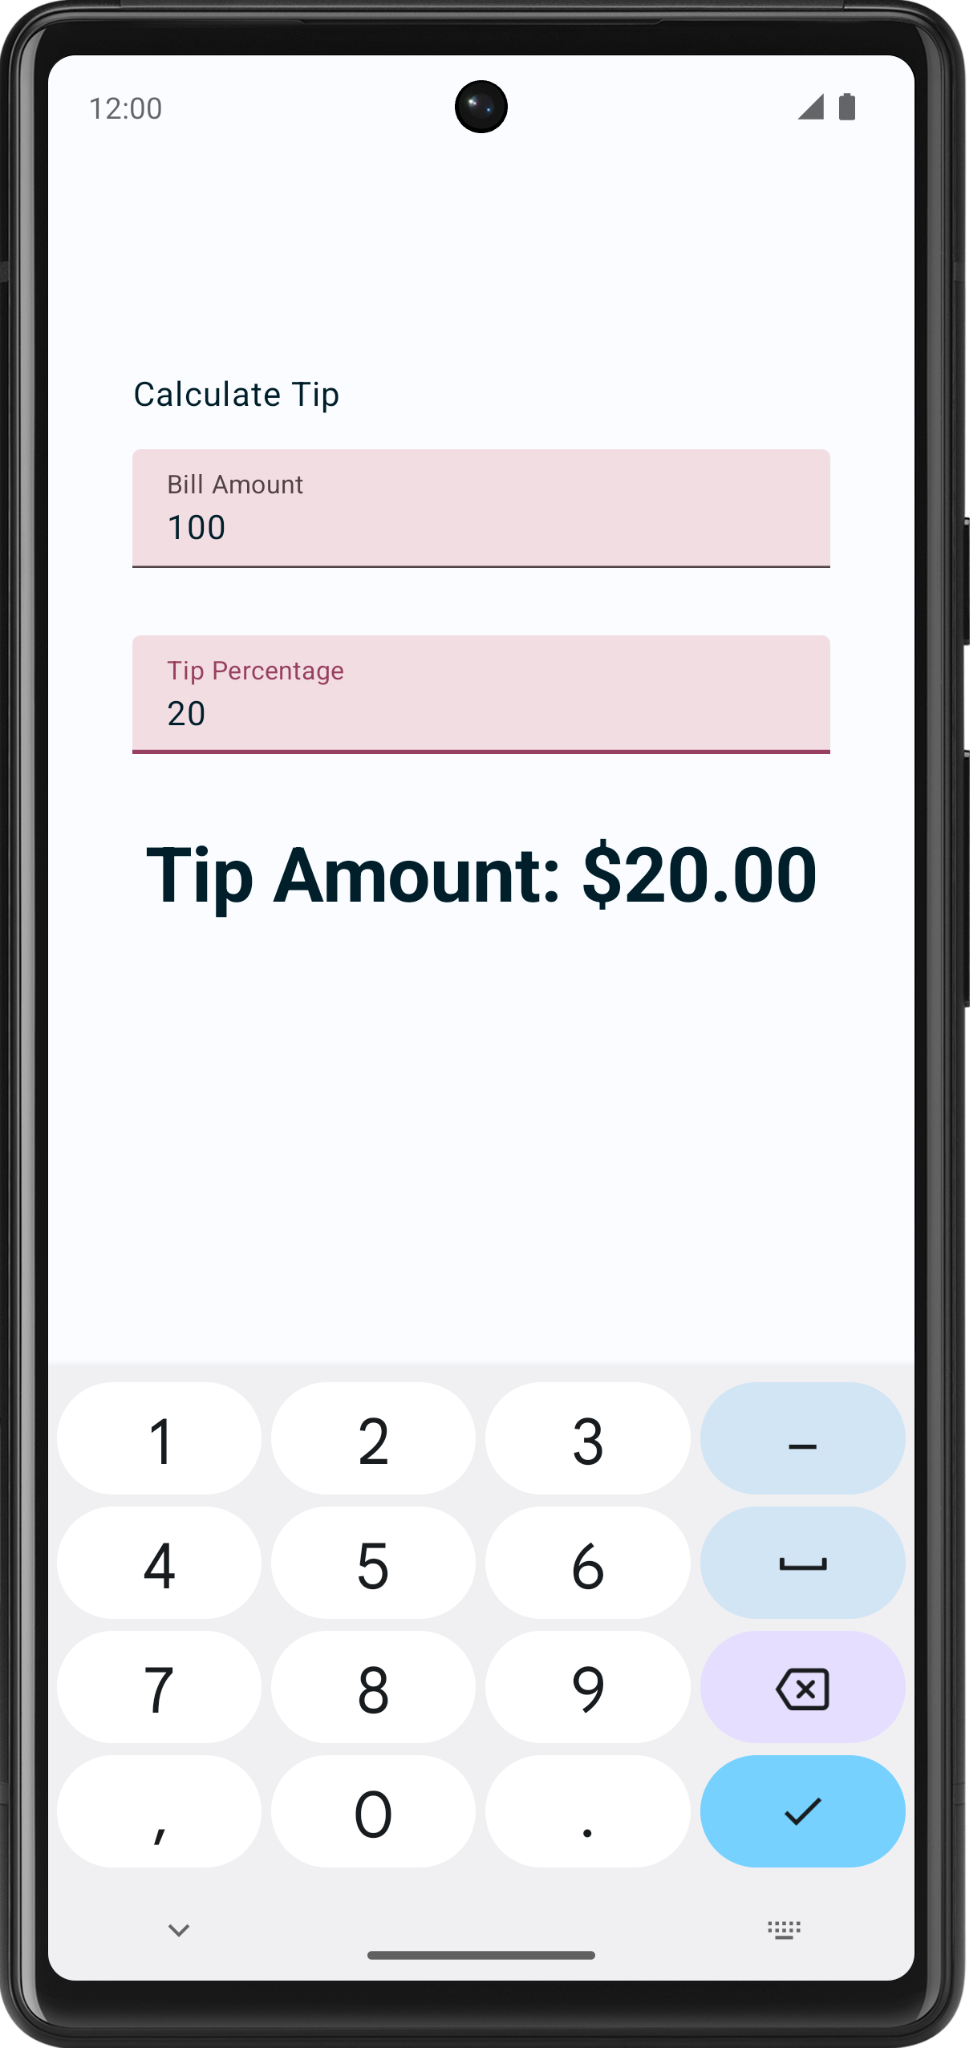 captura de pantalla con el importe de la factura como 100, la propina como 20 por ciento y el importe de la propina se muestra como 20 dólares